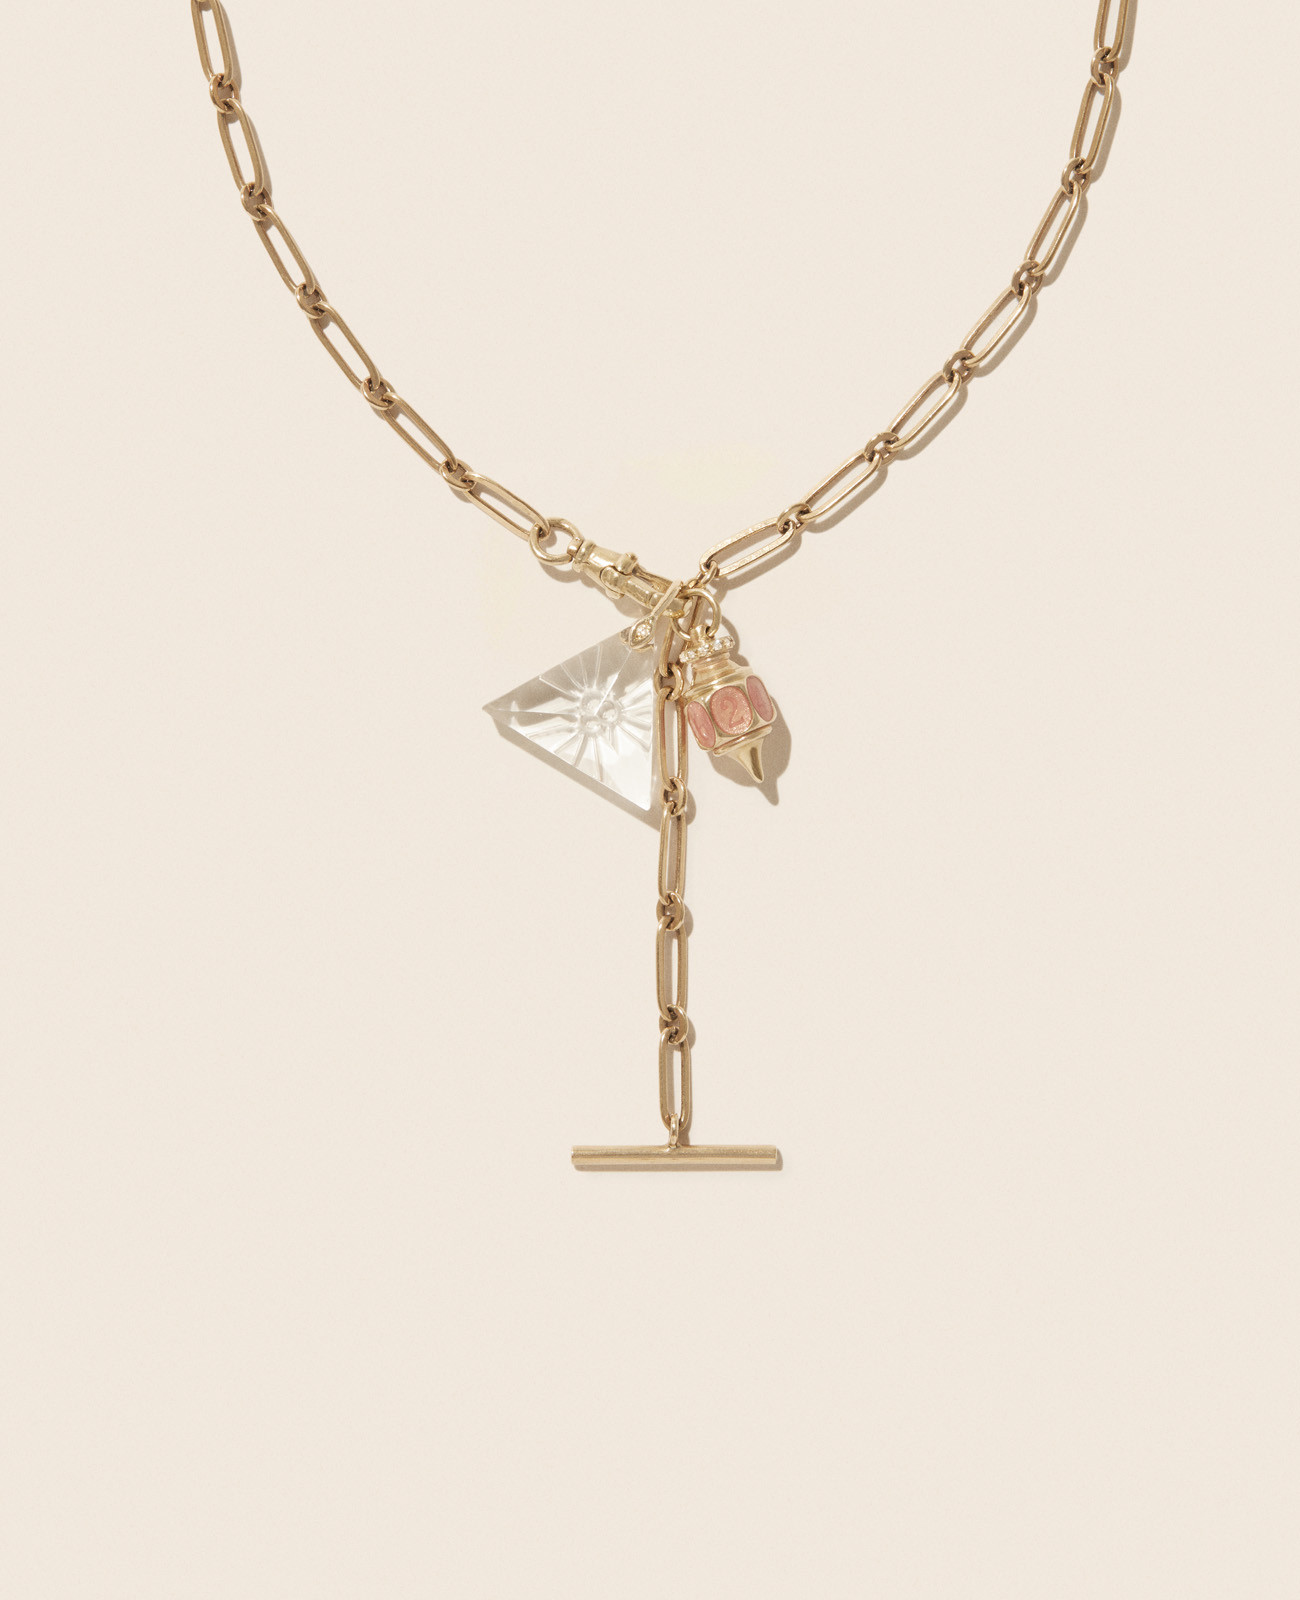 DEBBIE N°2 necklace pascale monvoisin jewelry paris